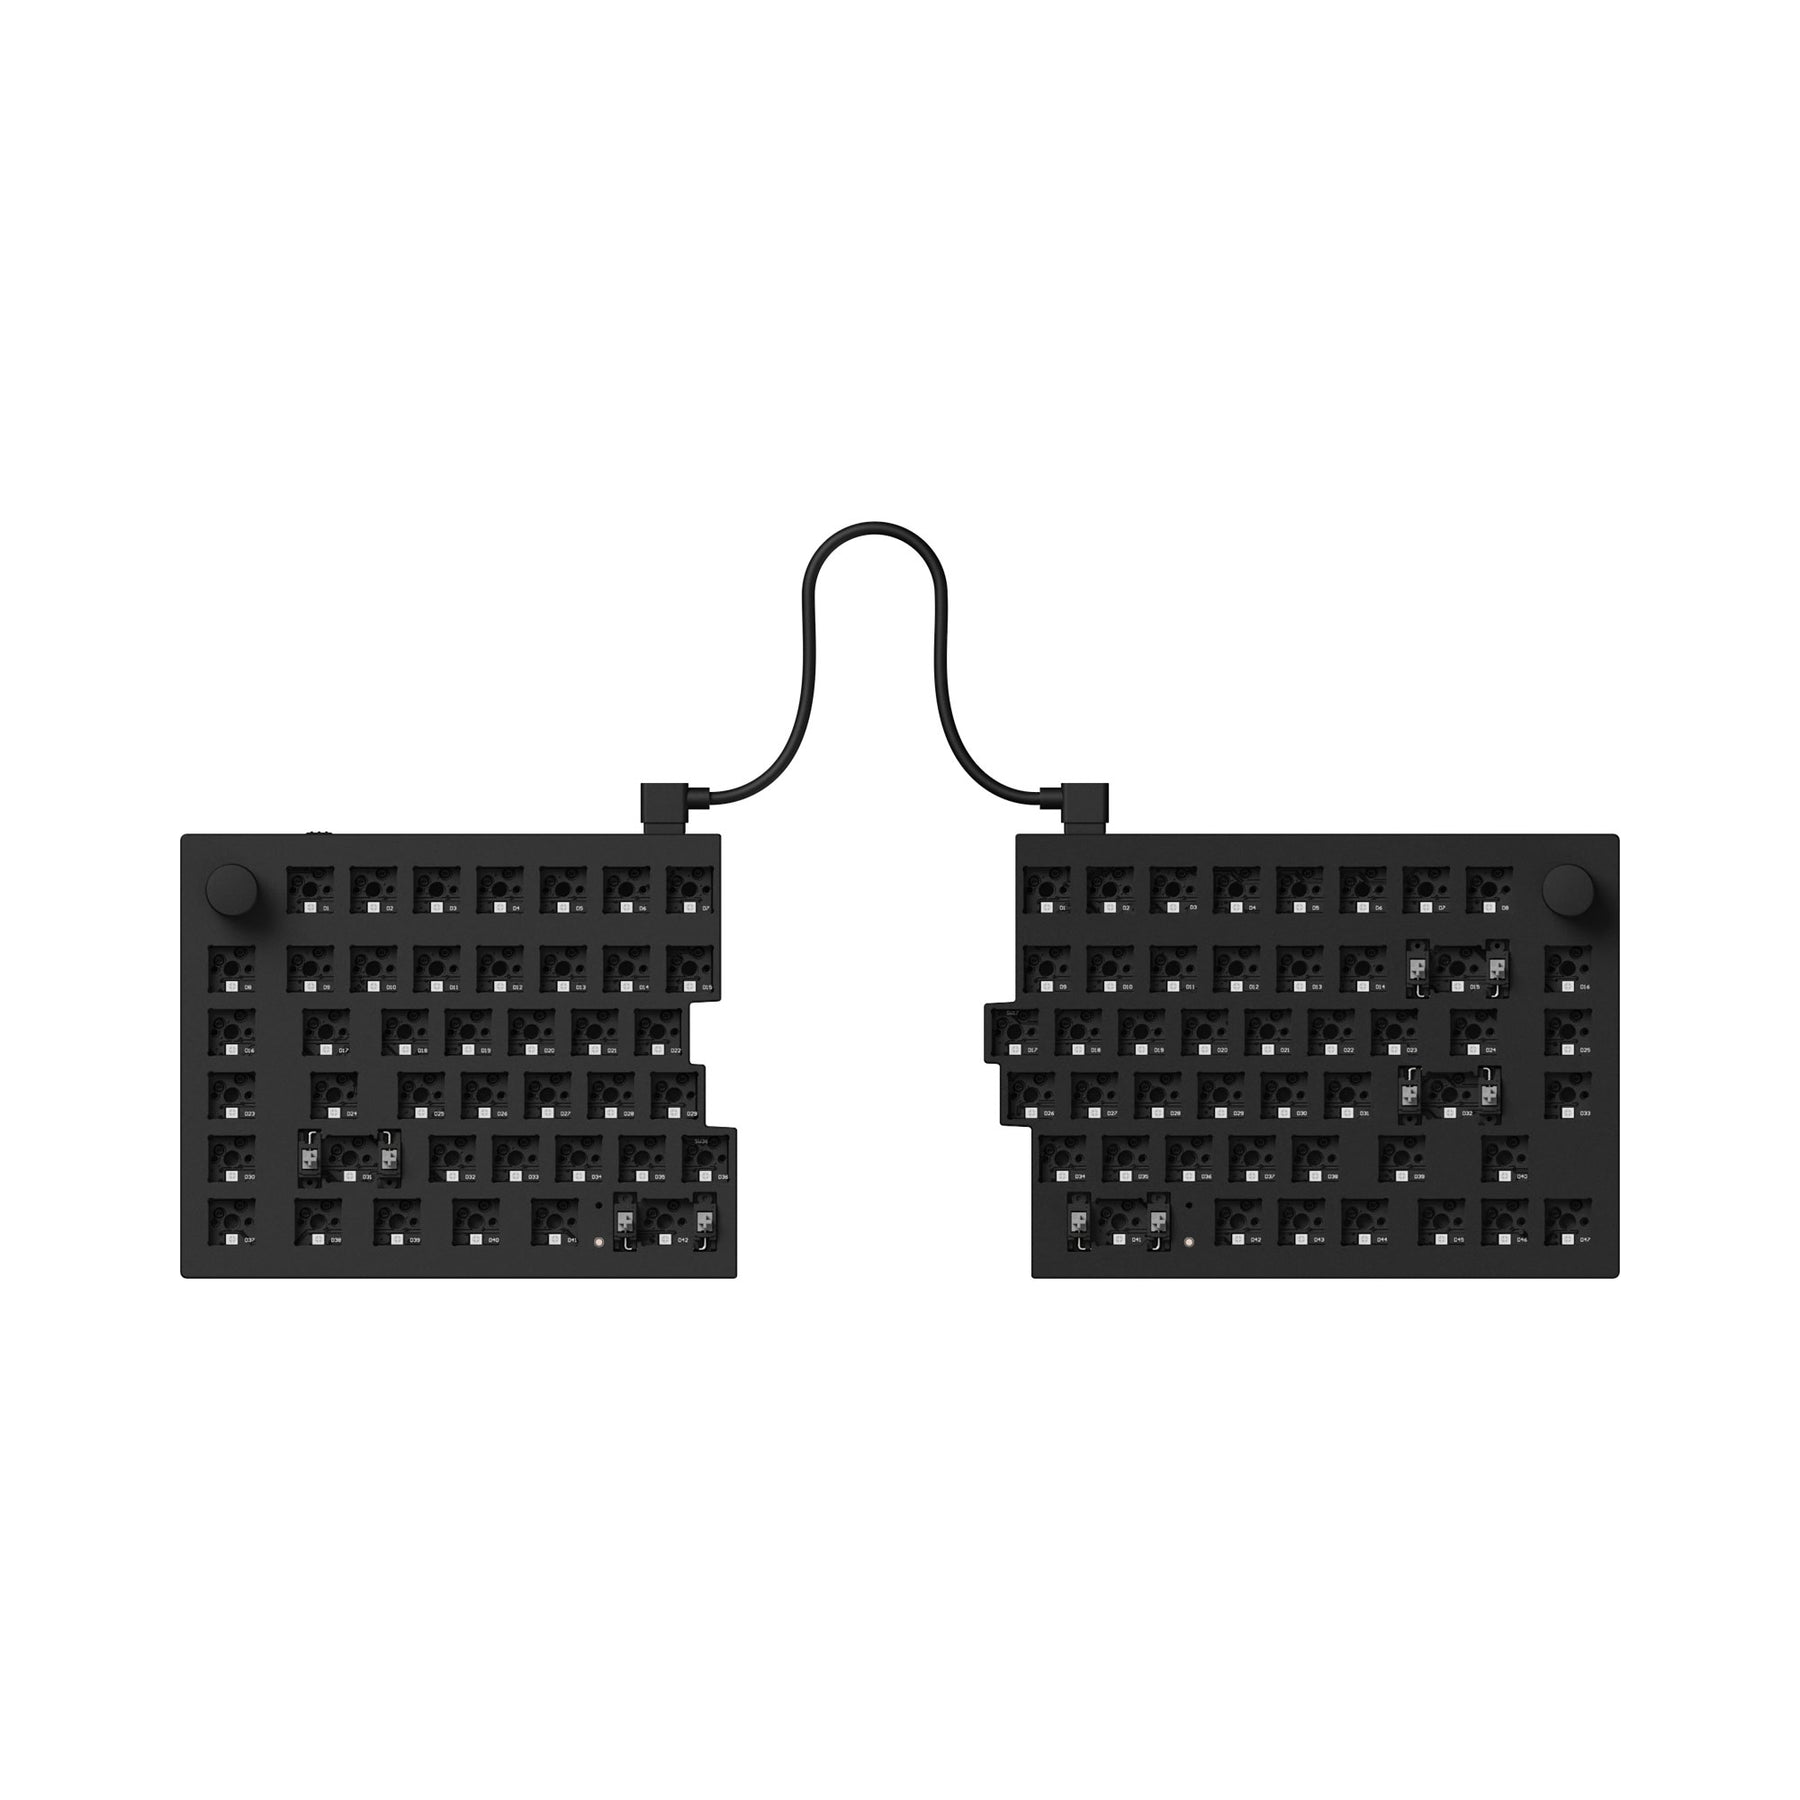 Keychron Q11 QMK Custom Mechanical Keyboard (ANSI Layout)